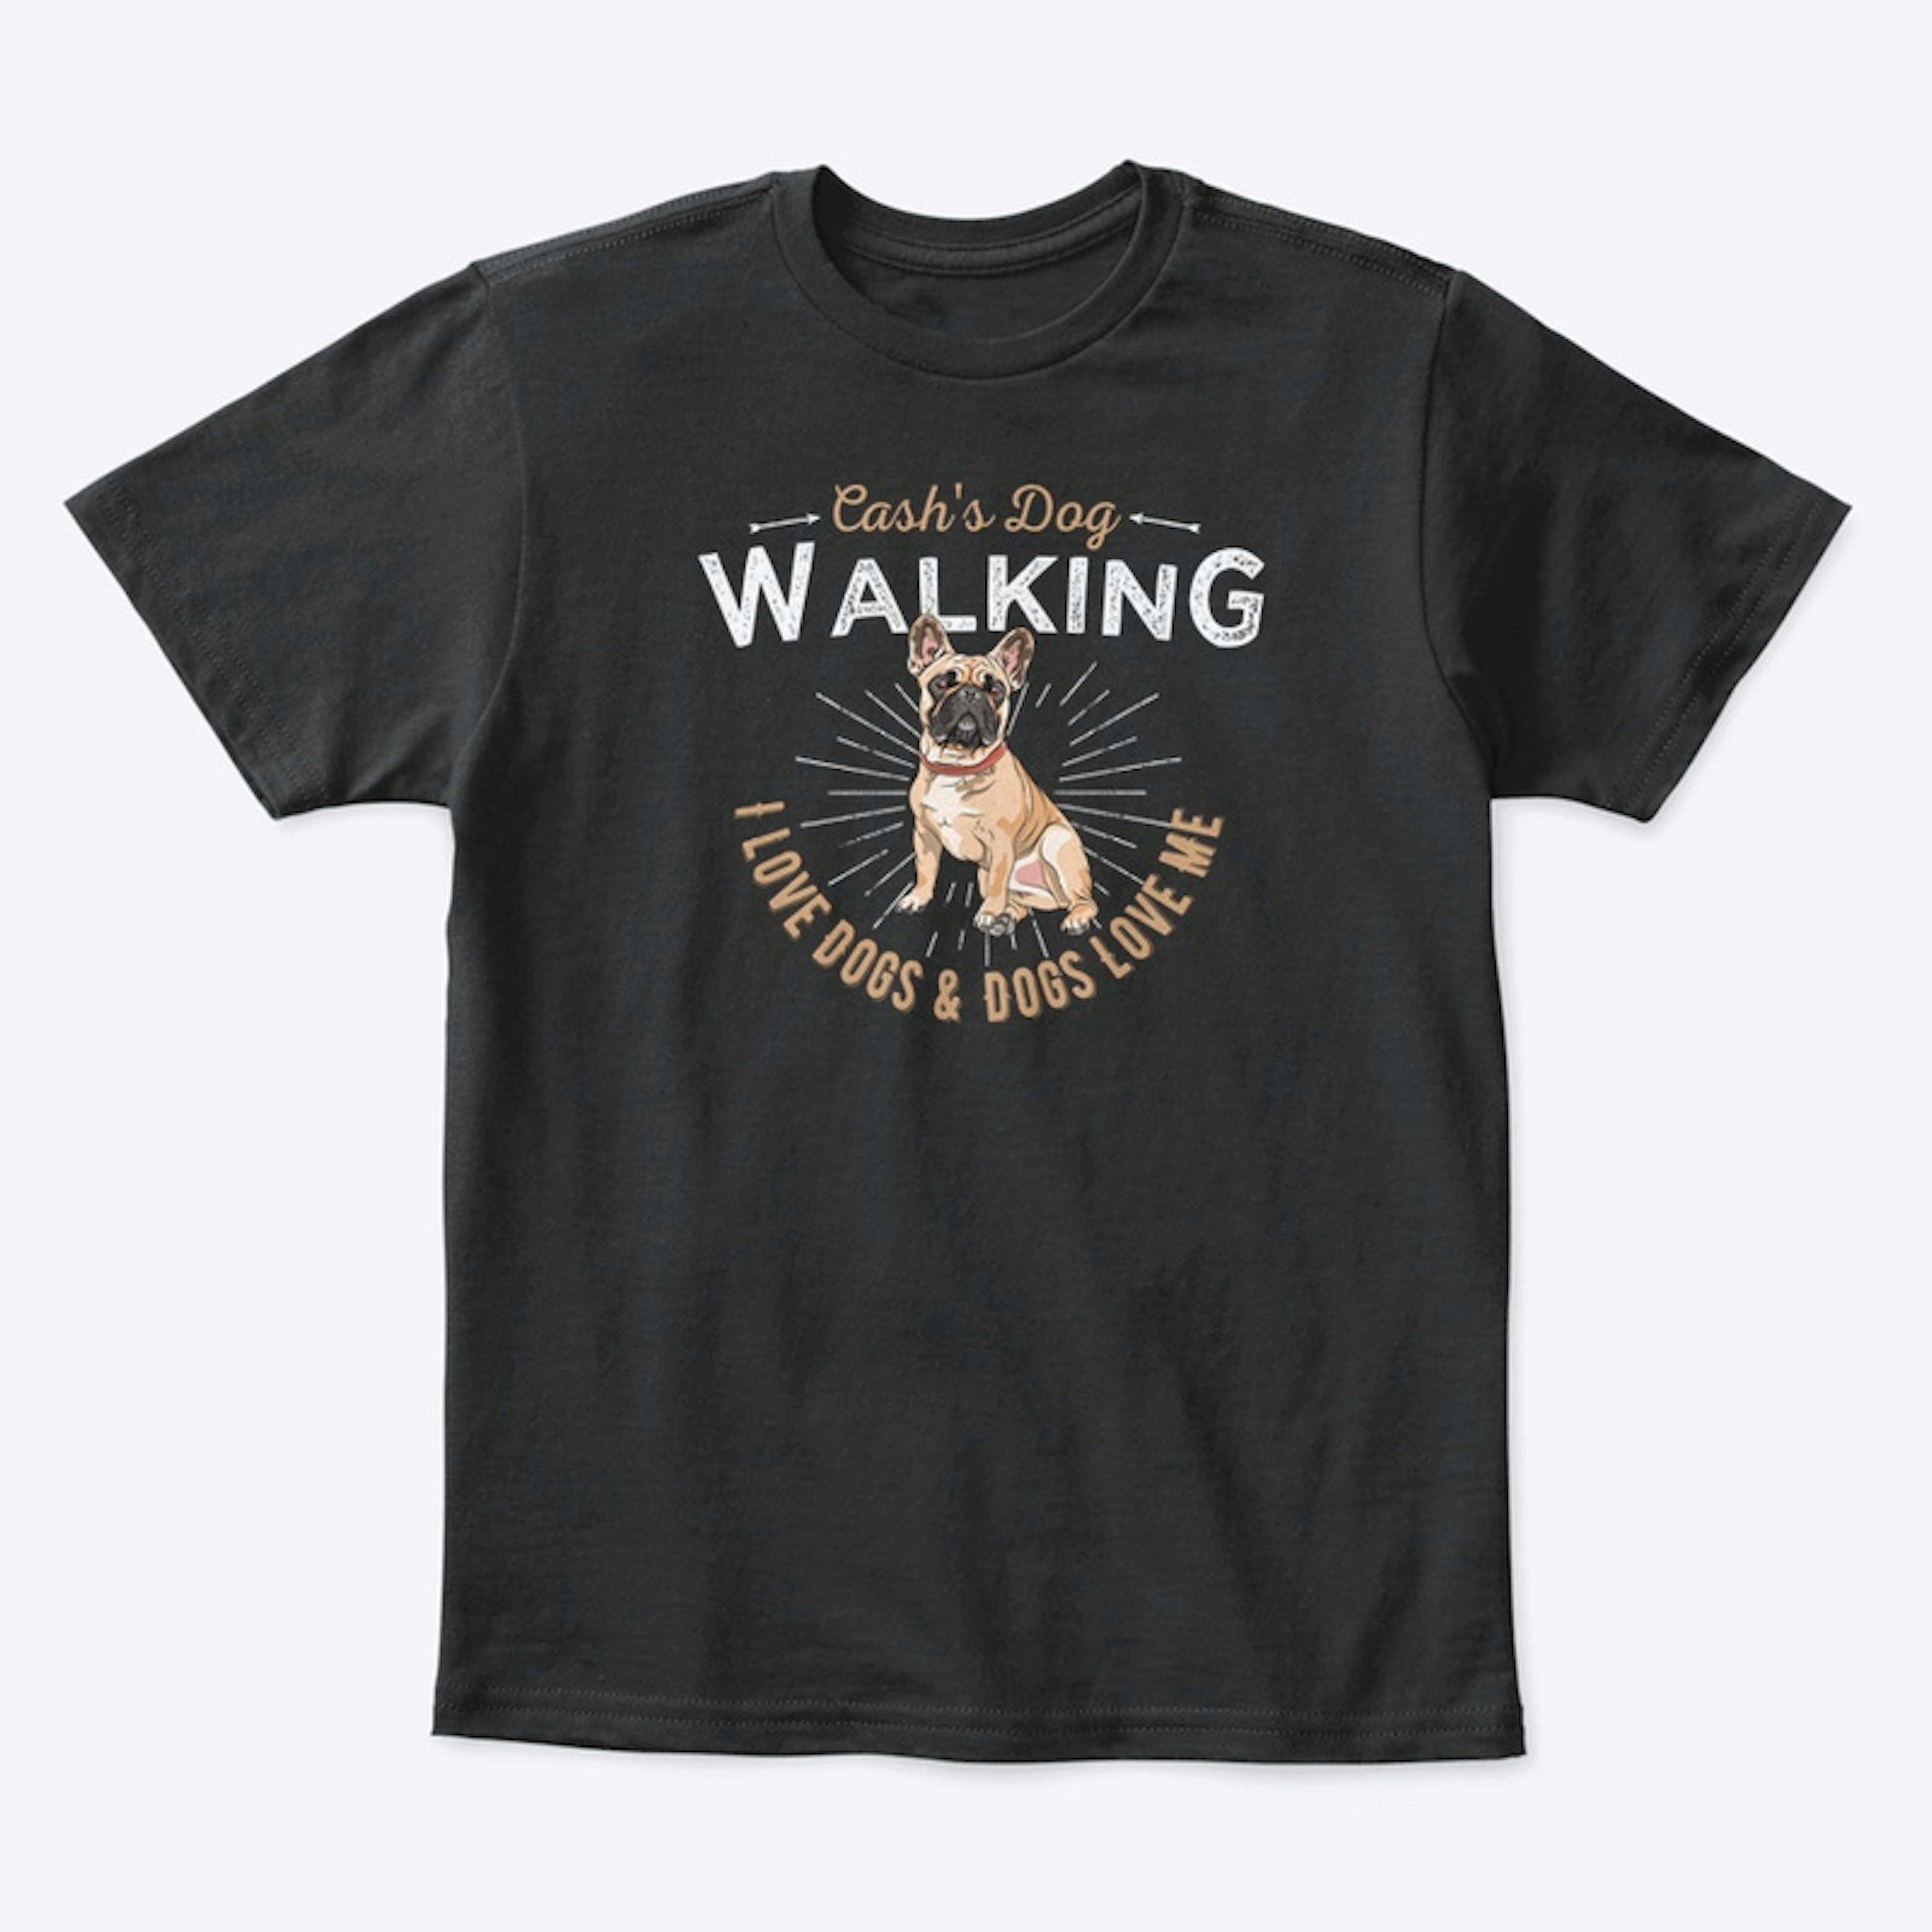 Cash's Dog Walking